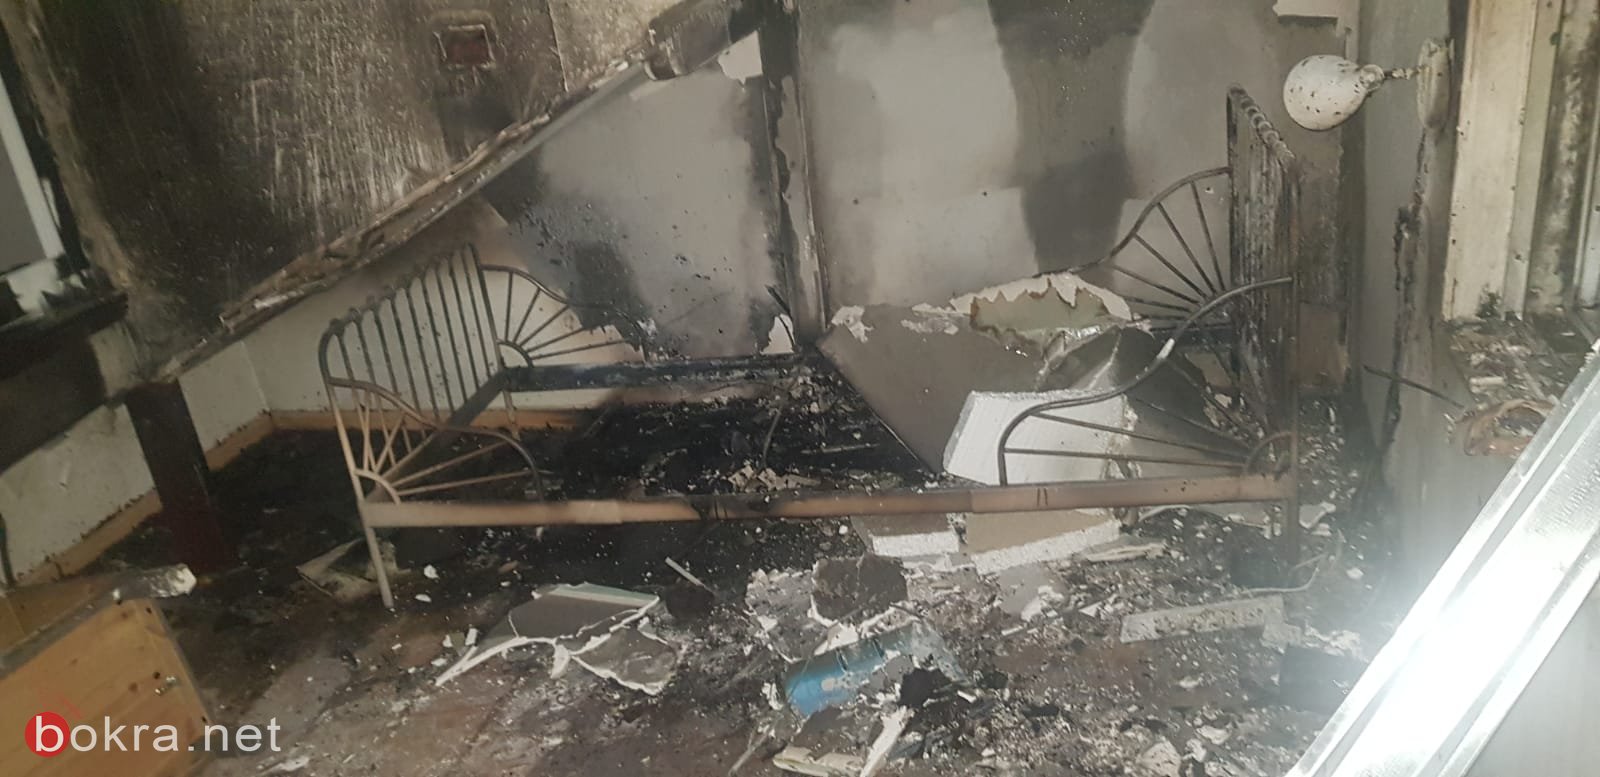 معلوت ترشيحا: حريق في شقة سكنية بسبب "جهاز موزع الحرارة"-1